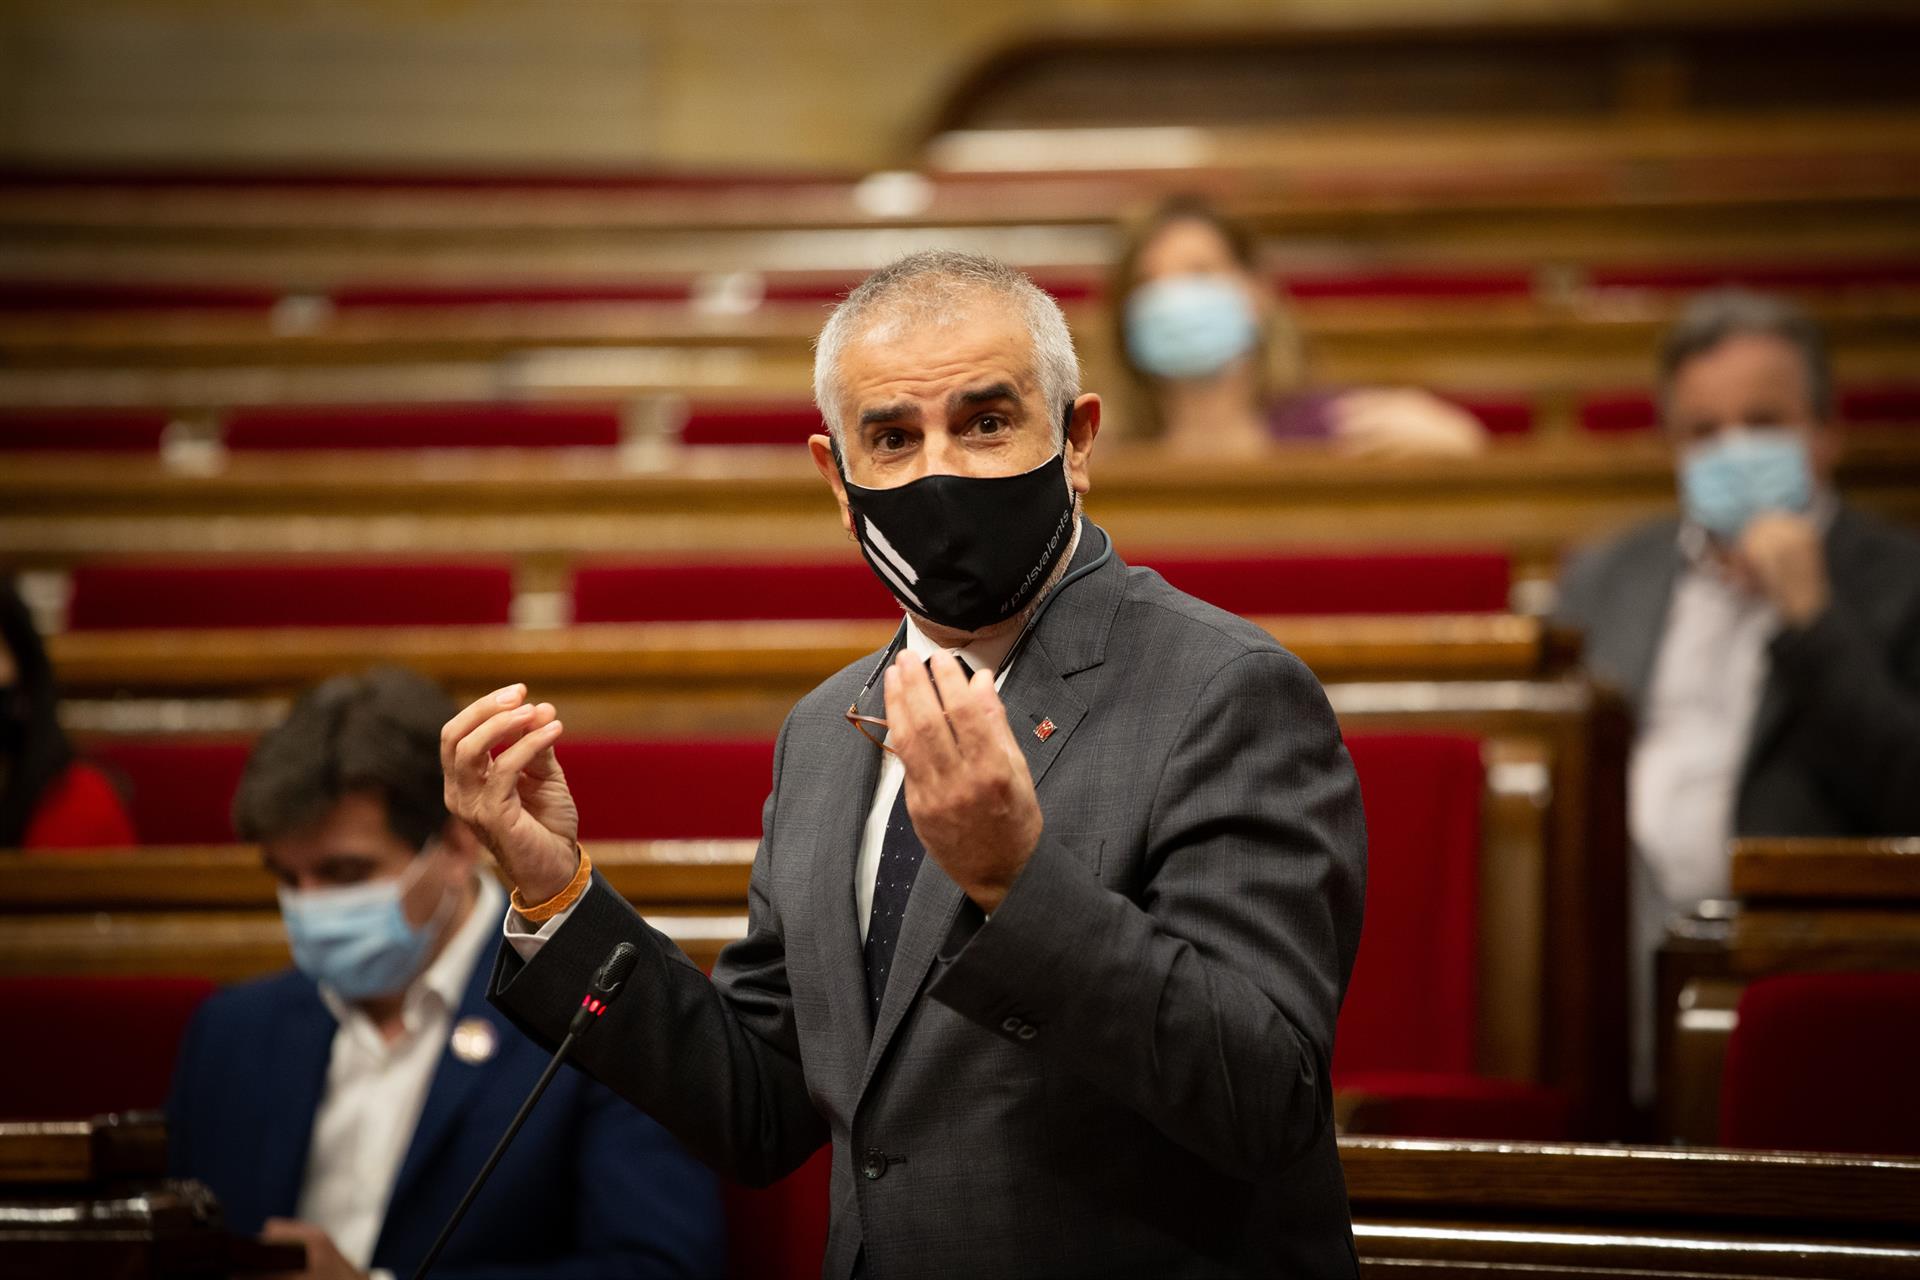 Carrizosa ataca a Aragonès en el debate sanitario: "Tiene cara de convergente"